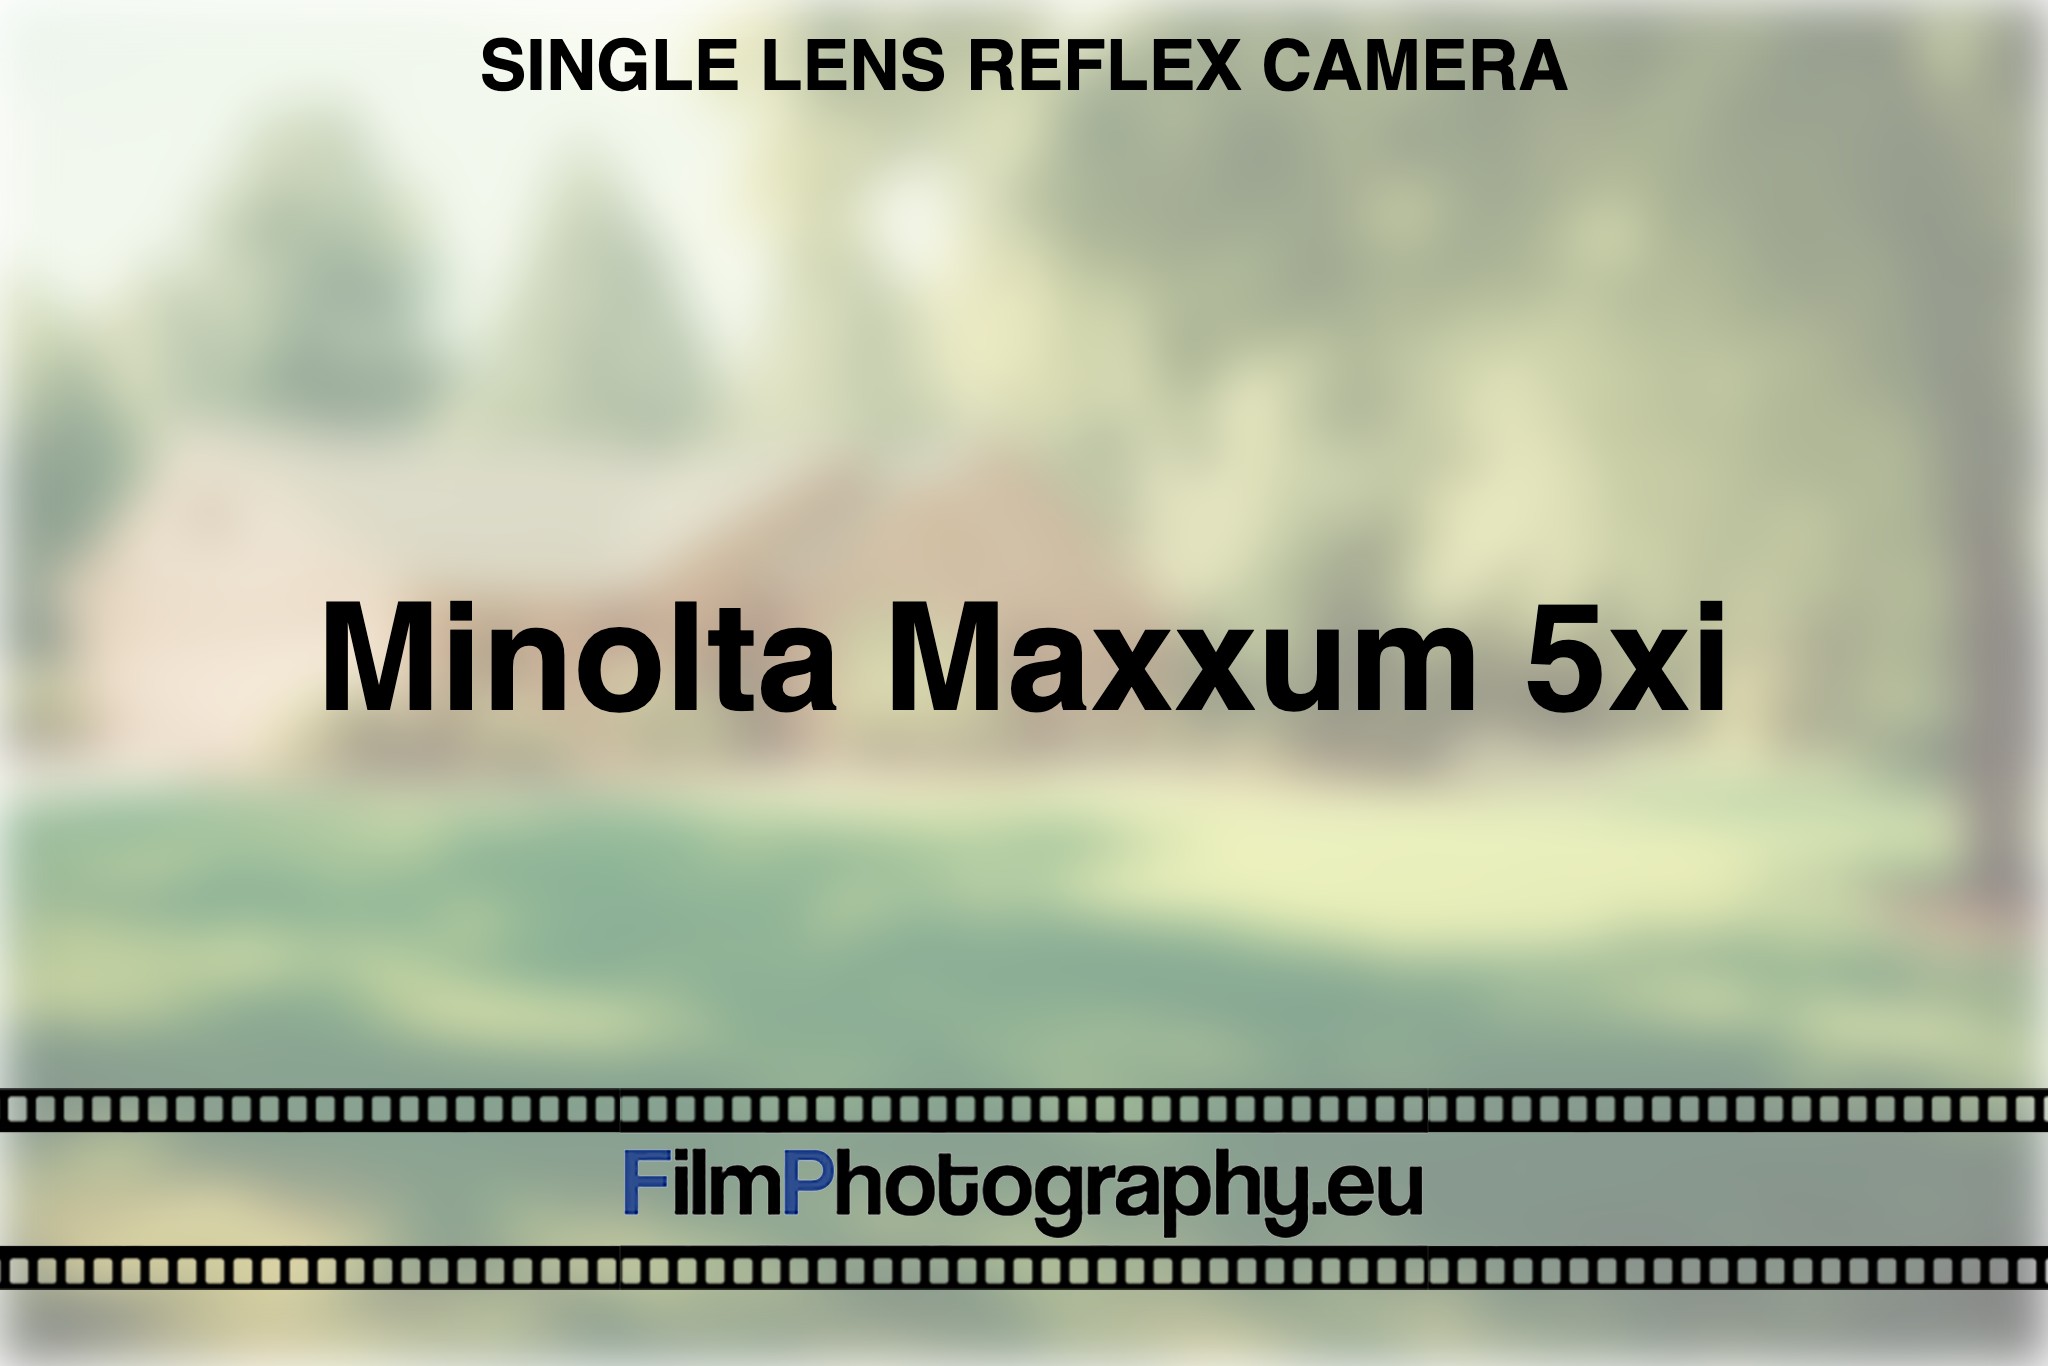 minolta-maxxum-5xi-single-lens-reflex-camera-bnv